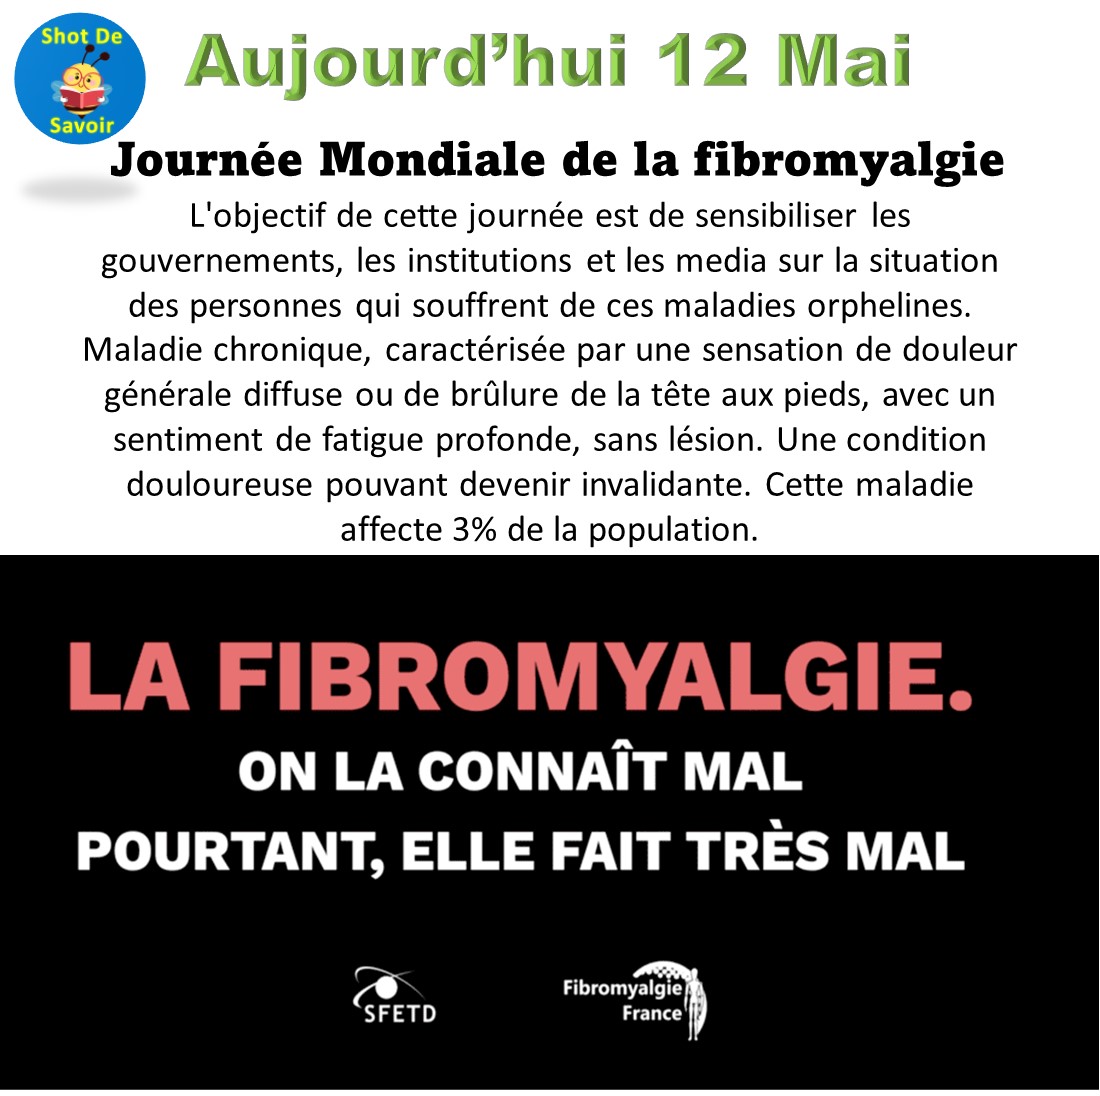 🎗Aujourd’hui 12 Mai

Journée Mondiale de la fibromyalgie

#JournéeMondiale